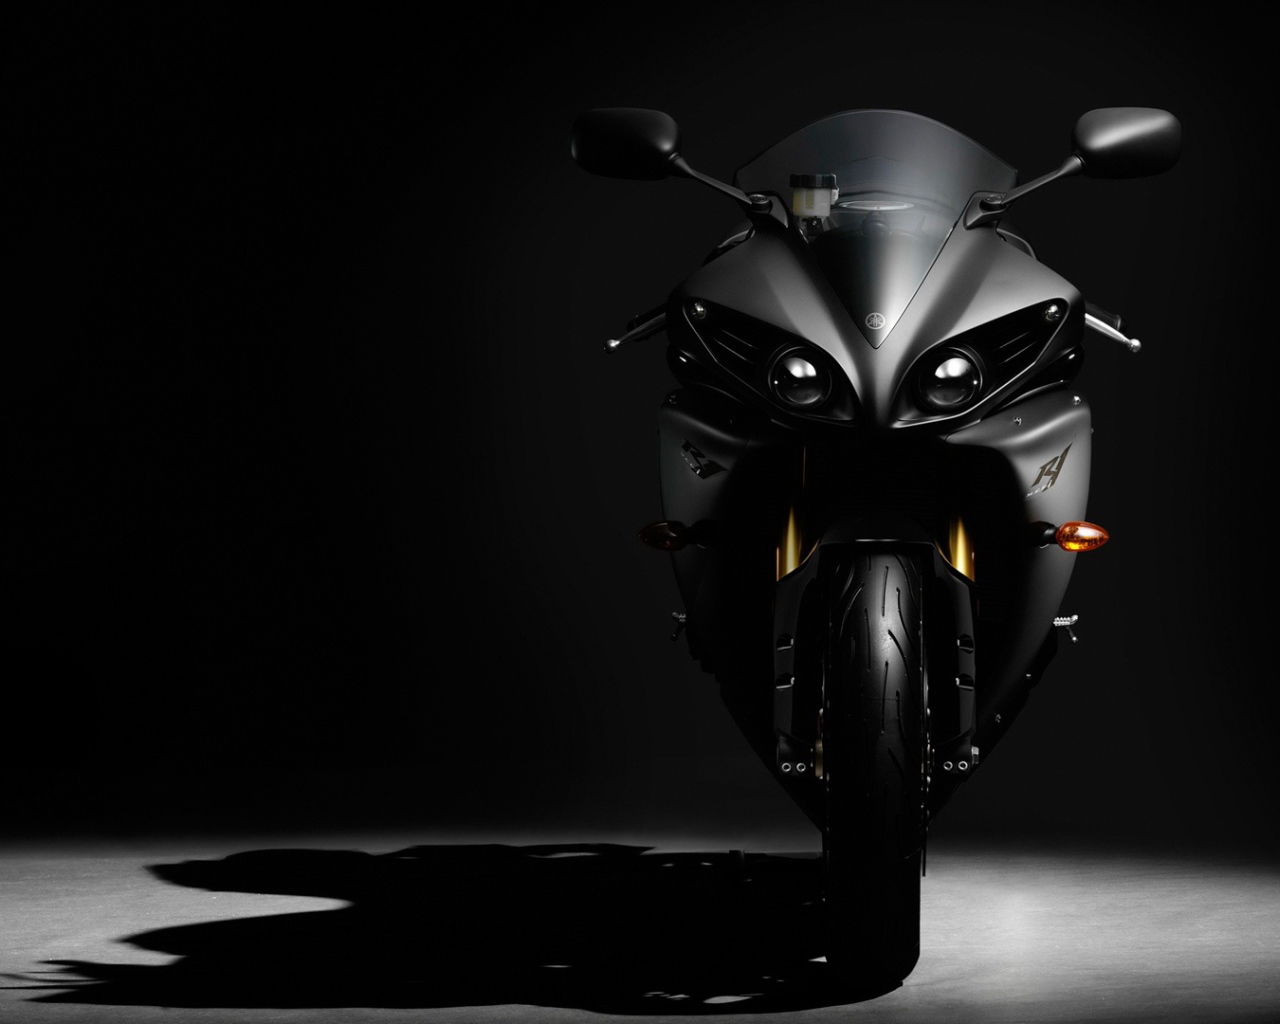 Стильный черный мотоцикл